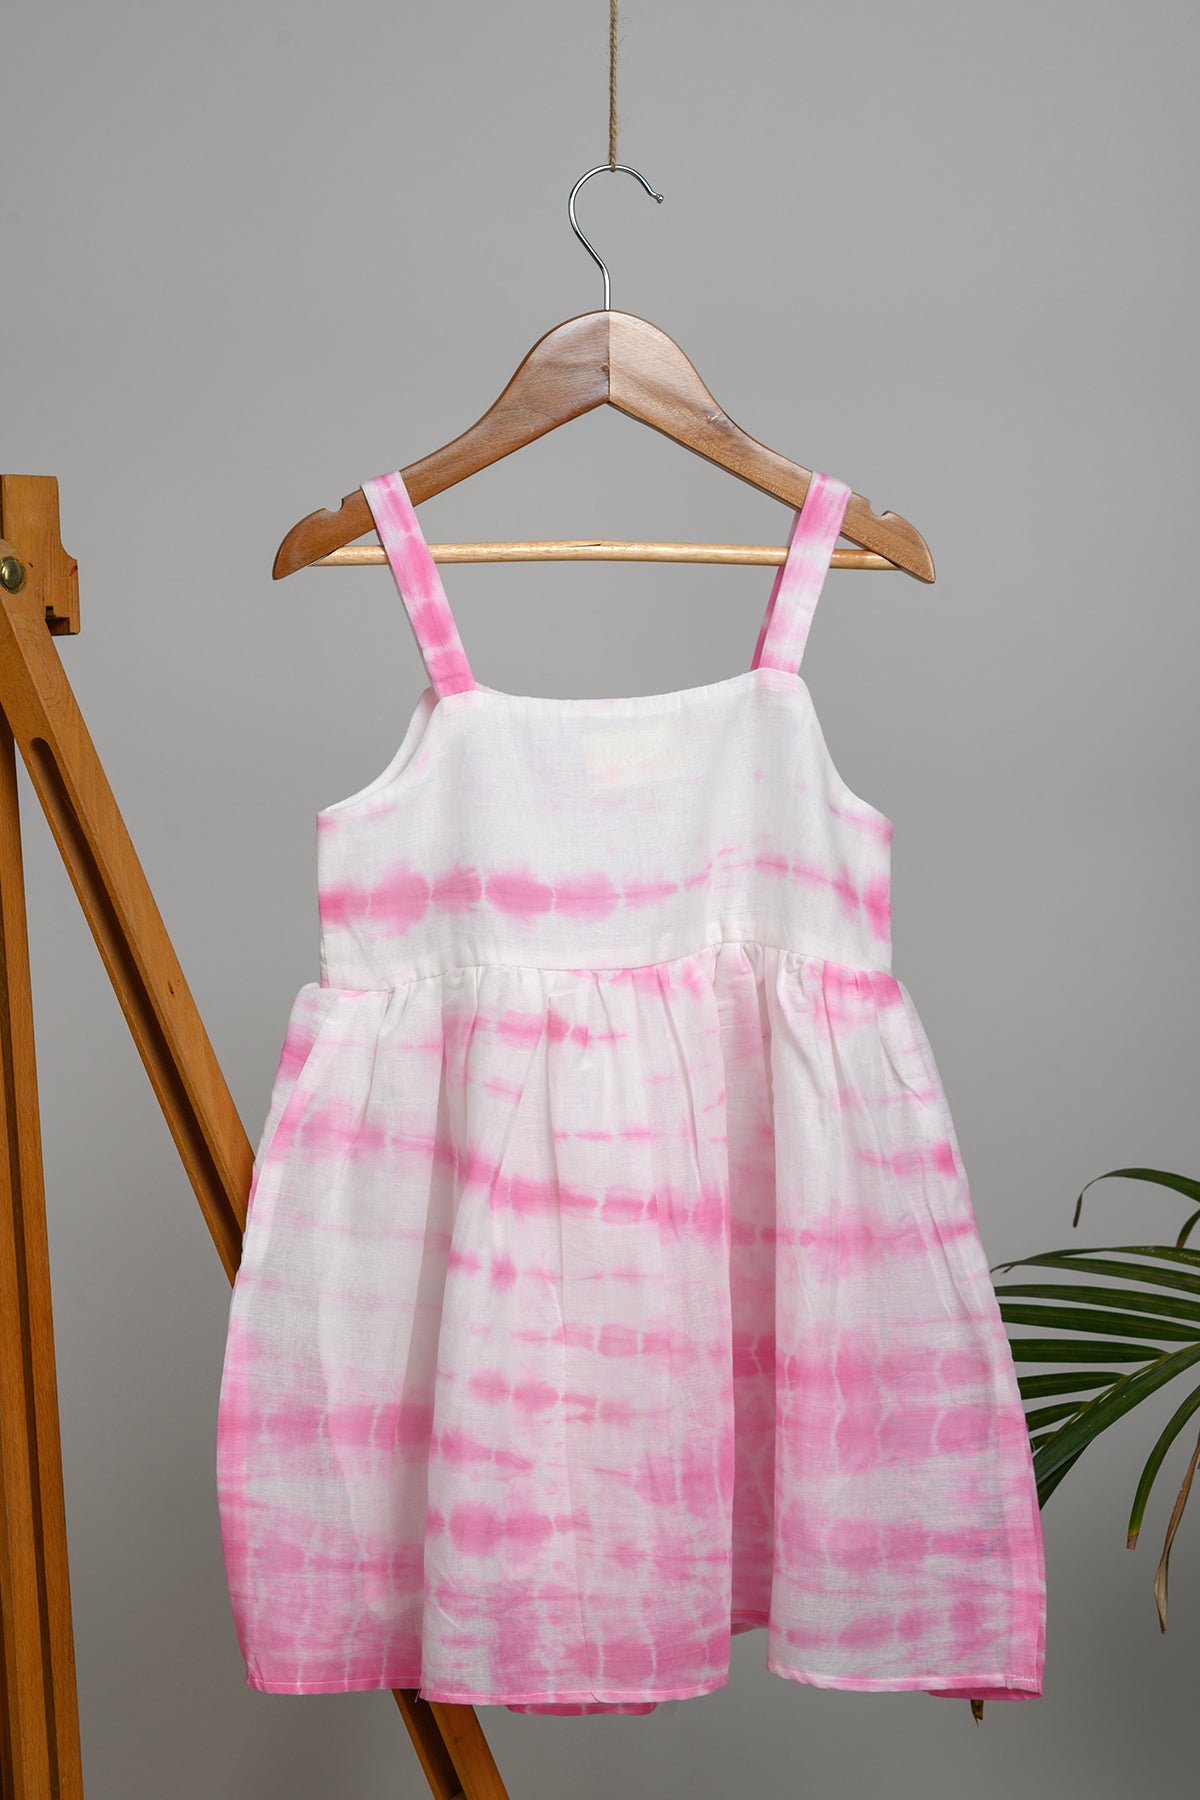 Ivy Shibori Strap Dress for Kids